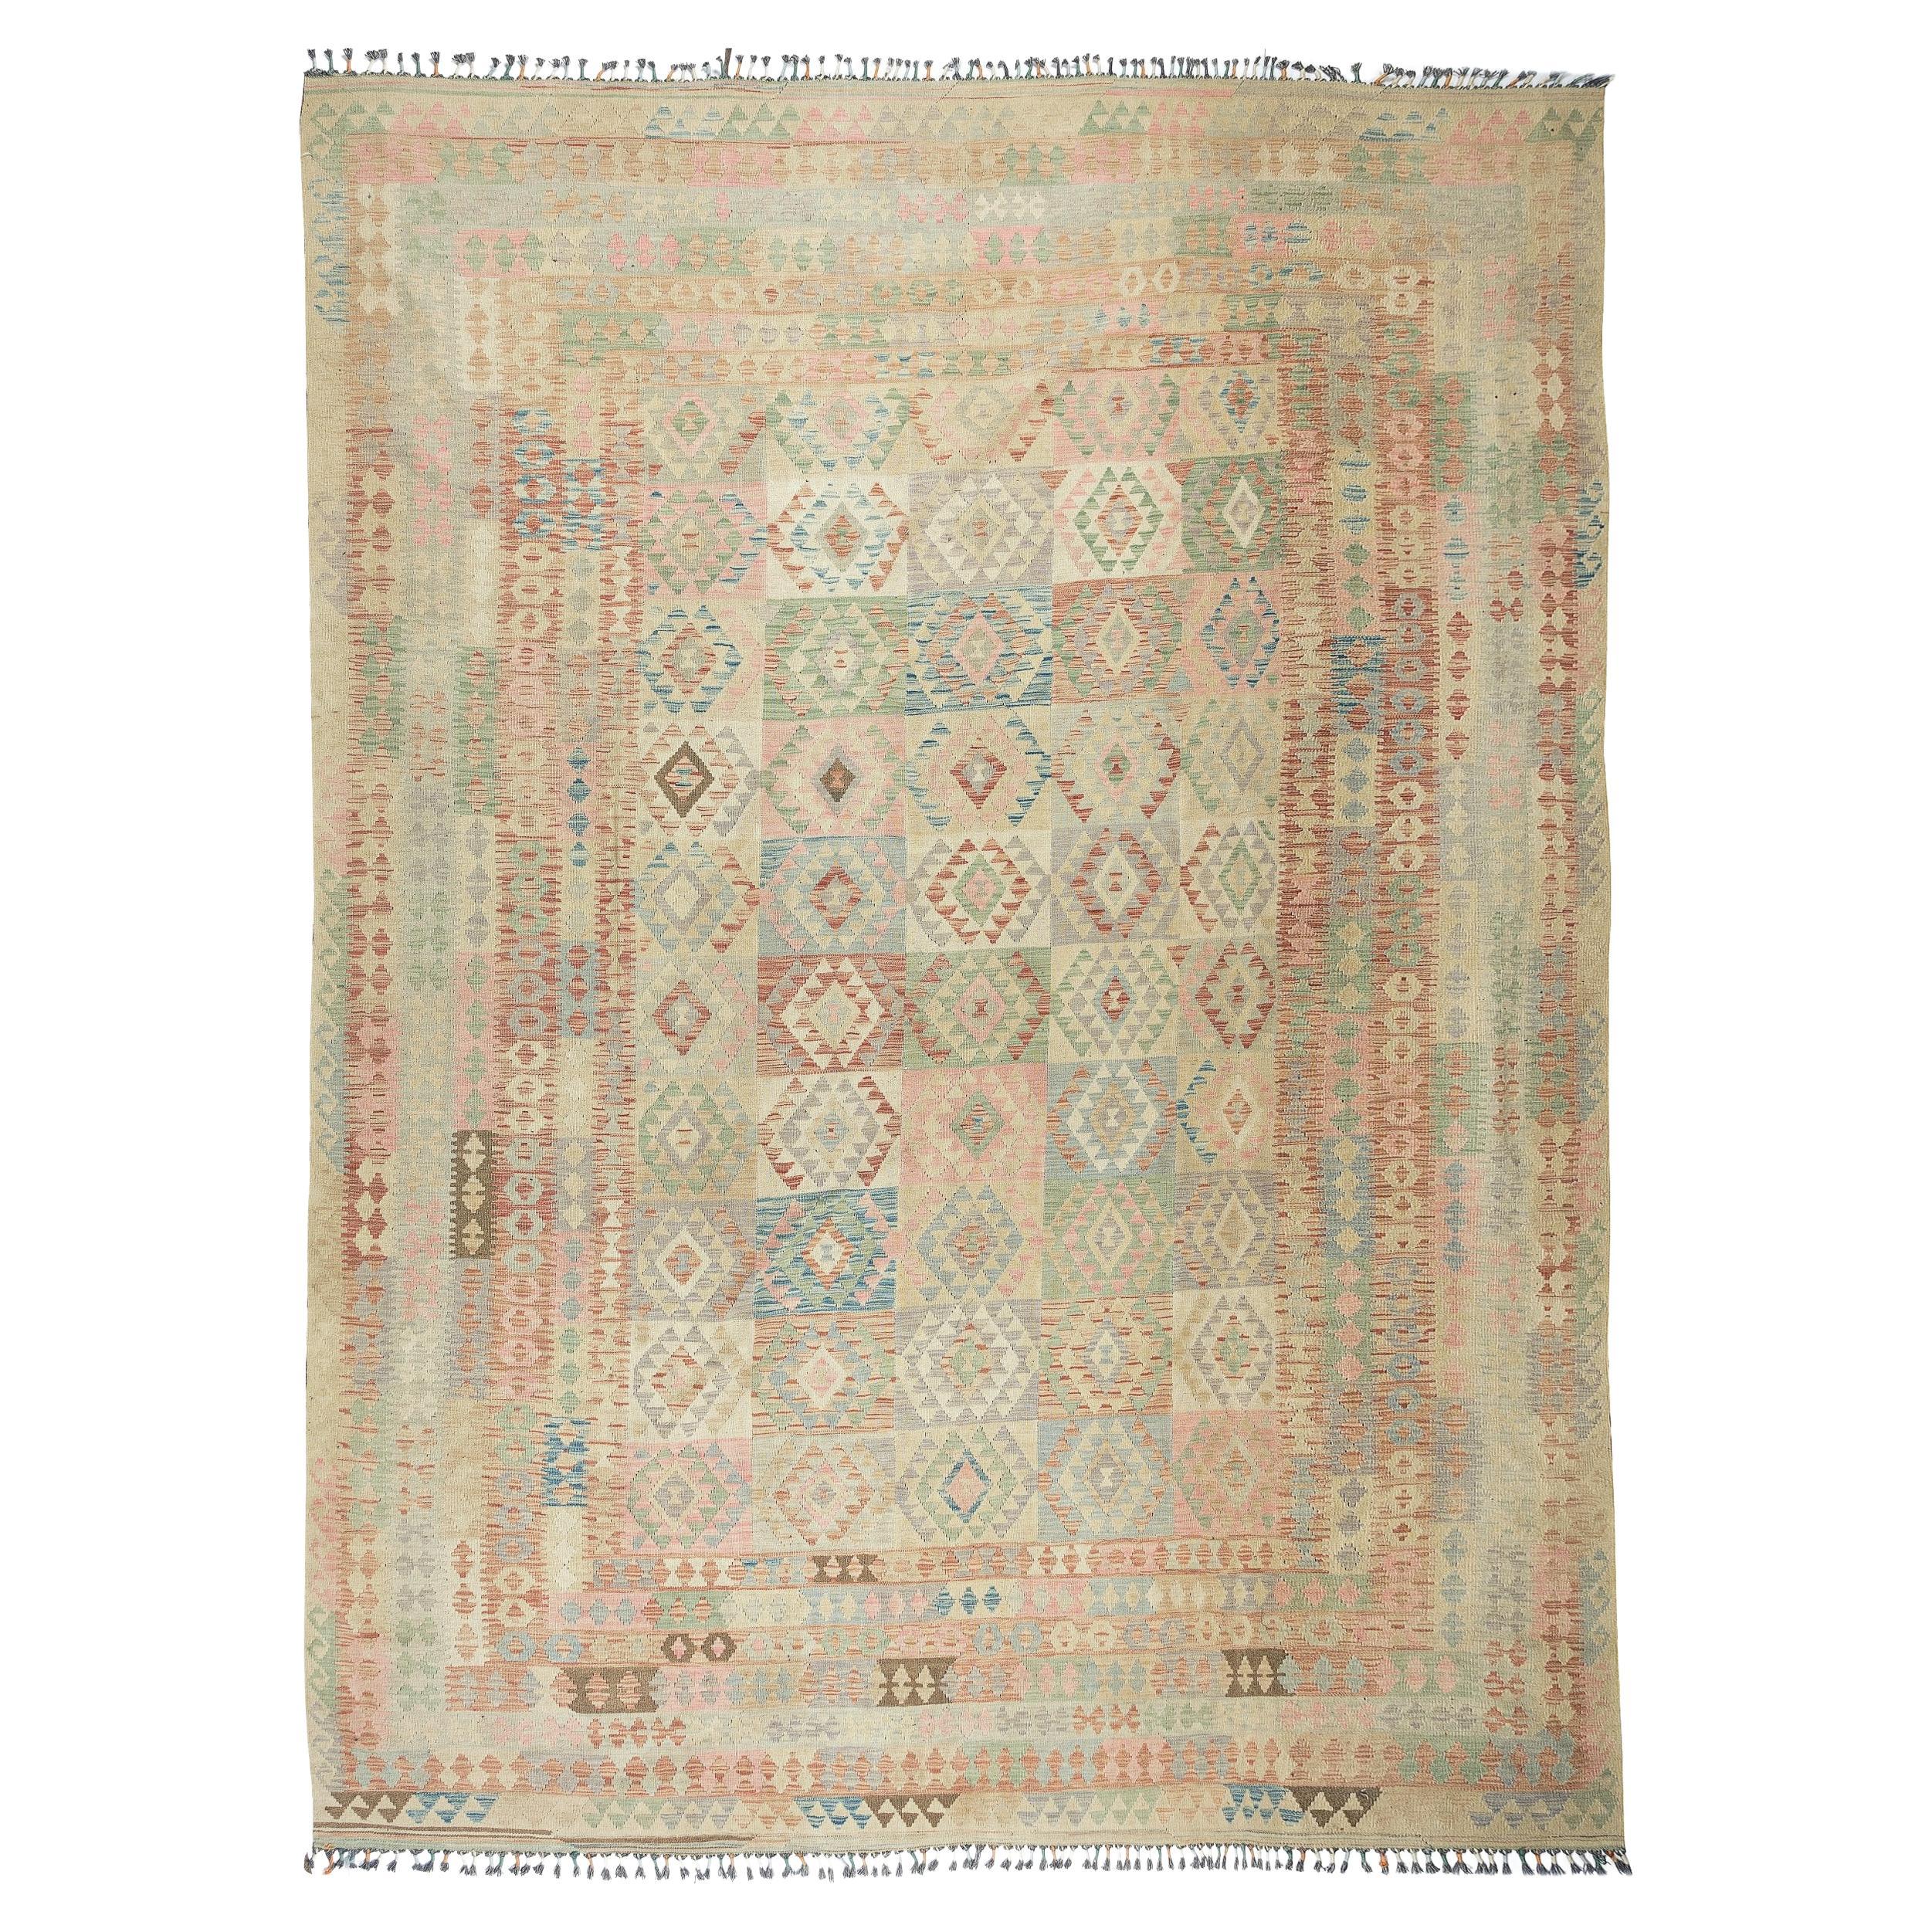 9.6x13.3 Ft Vintage Türkischer Kelim-Teppich, Flachgewebe-Wollteppich, weiche Pastellfarben